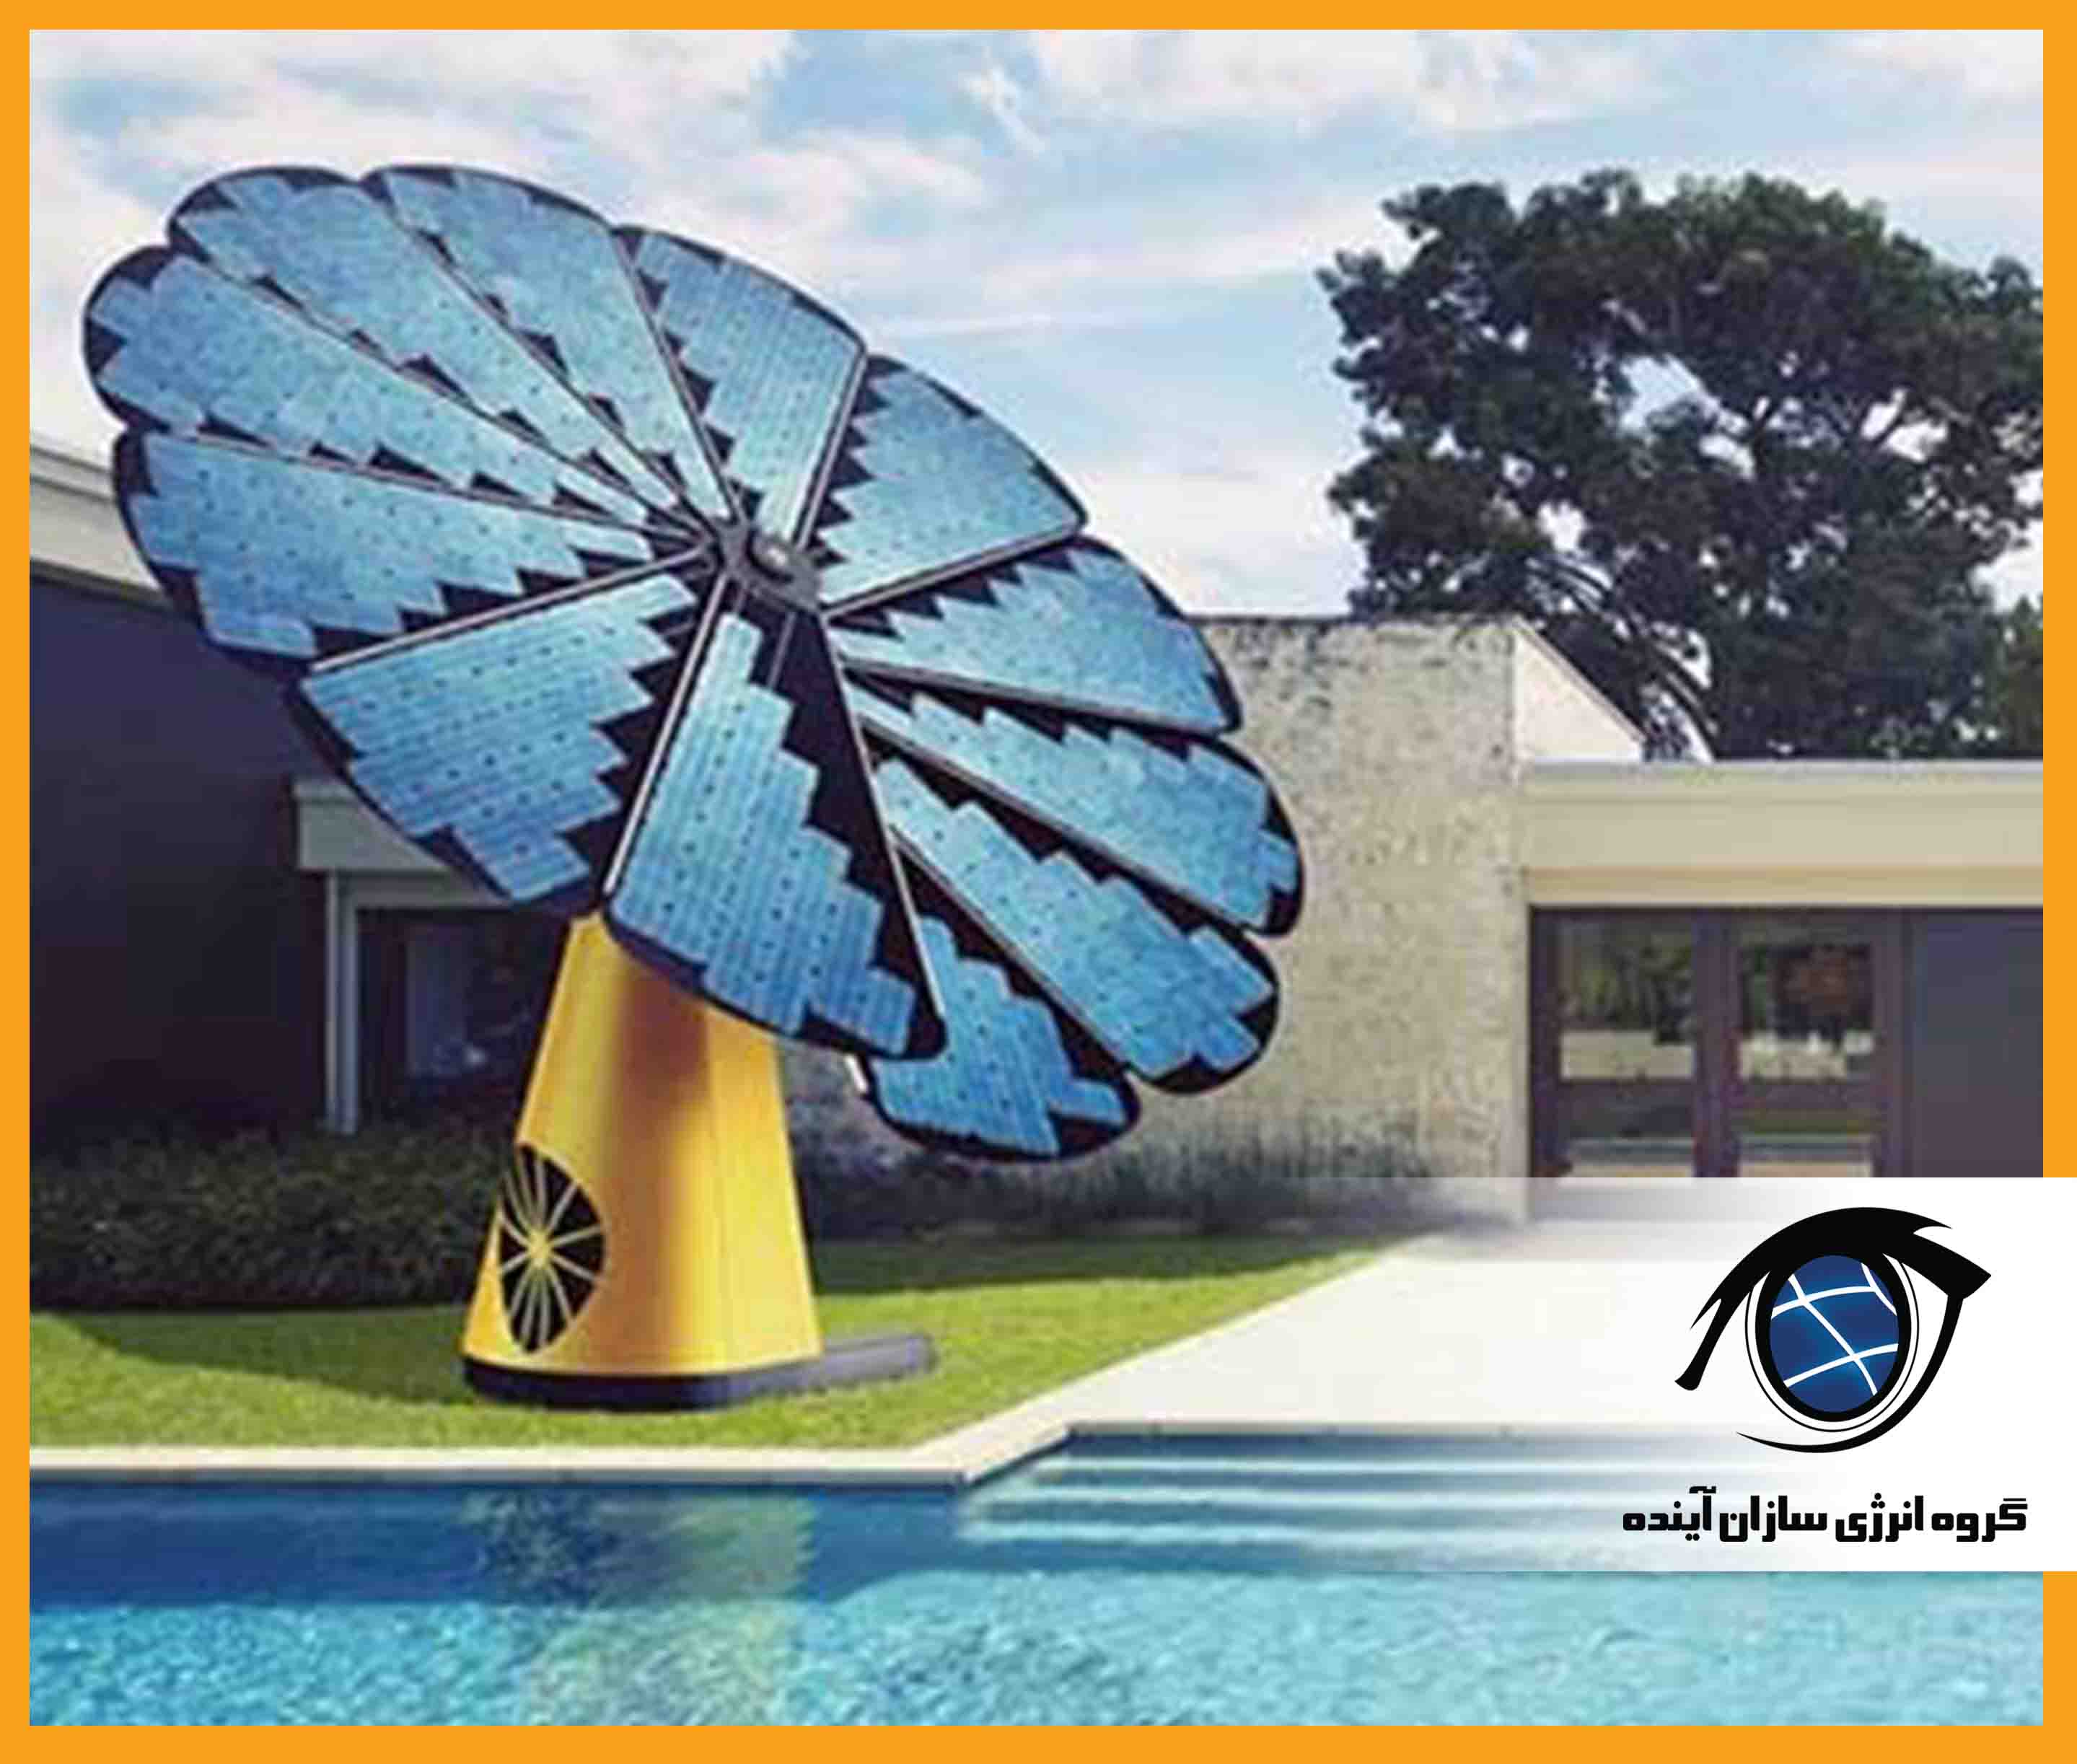 پنل خورشیدی به شکل گل آفتاب گردان